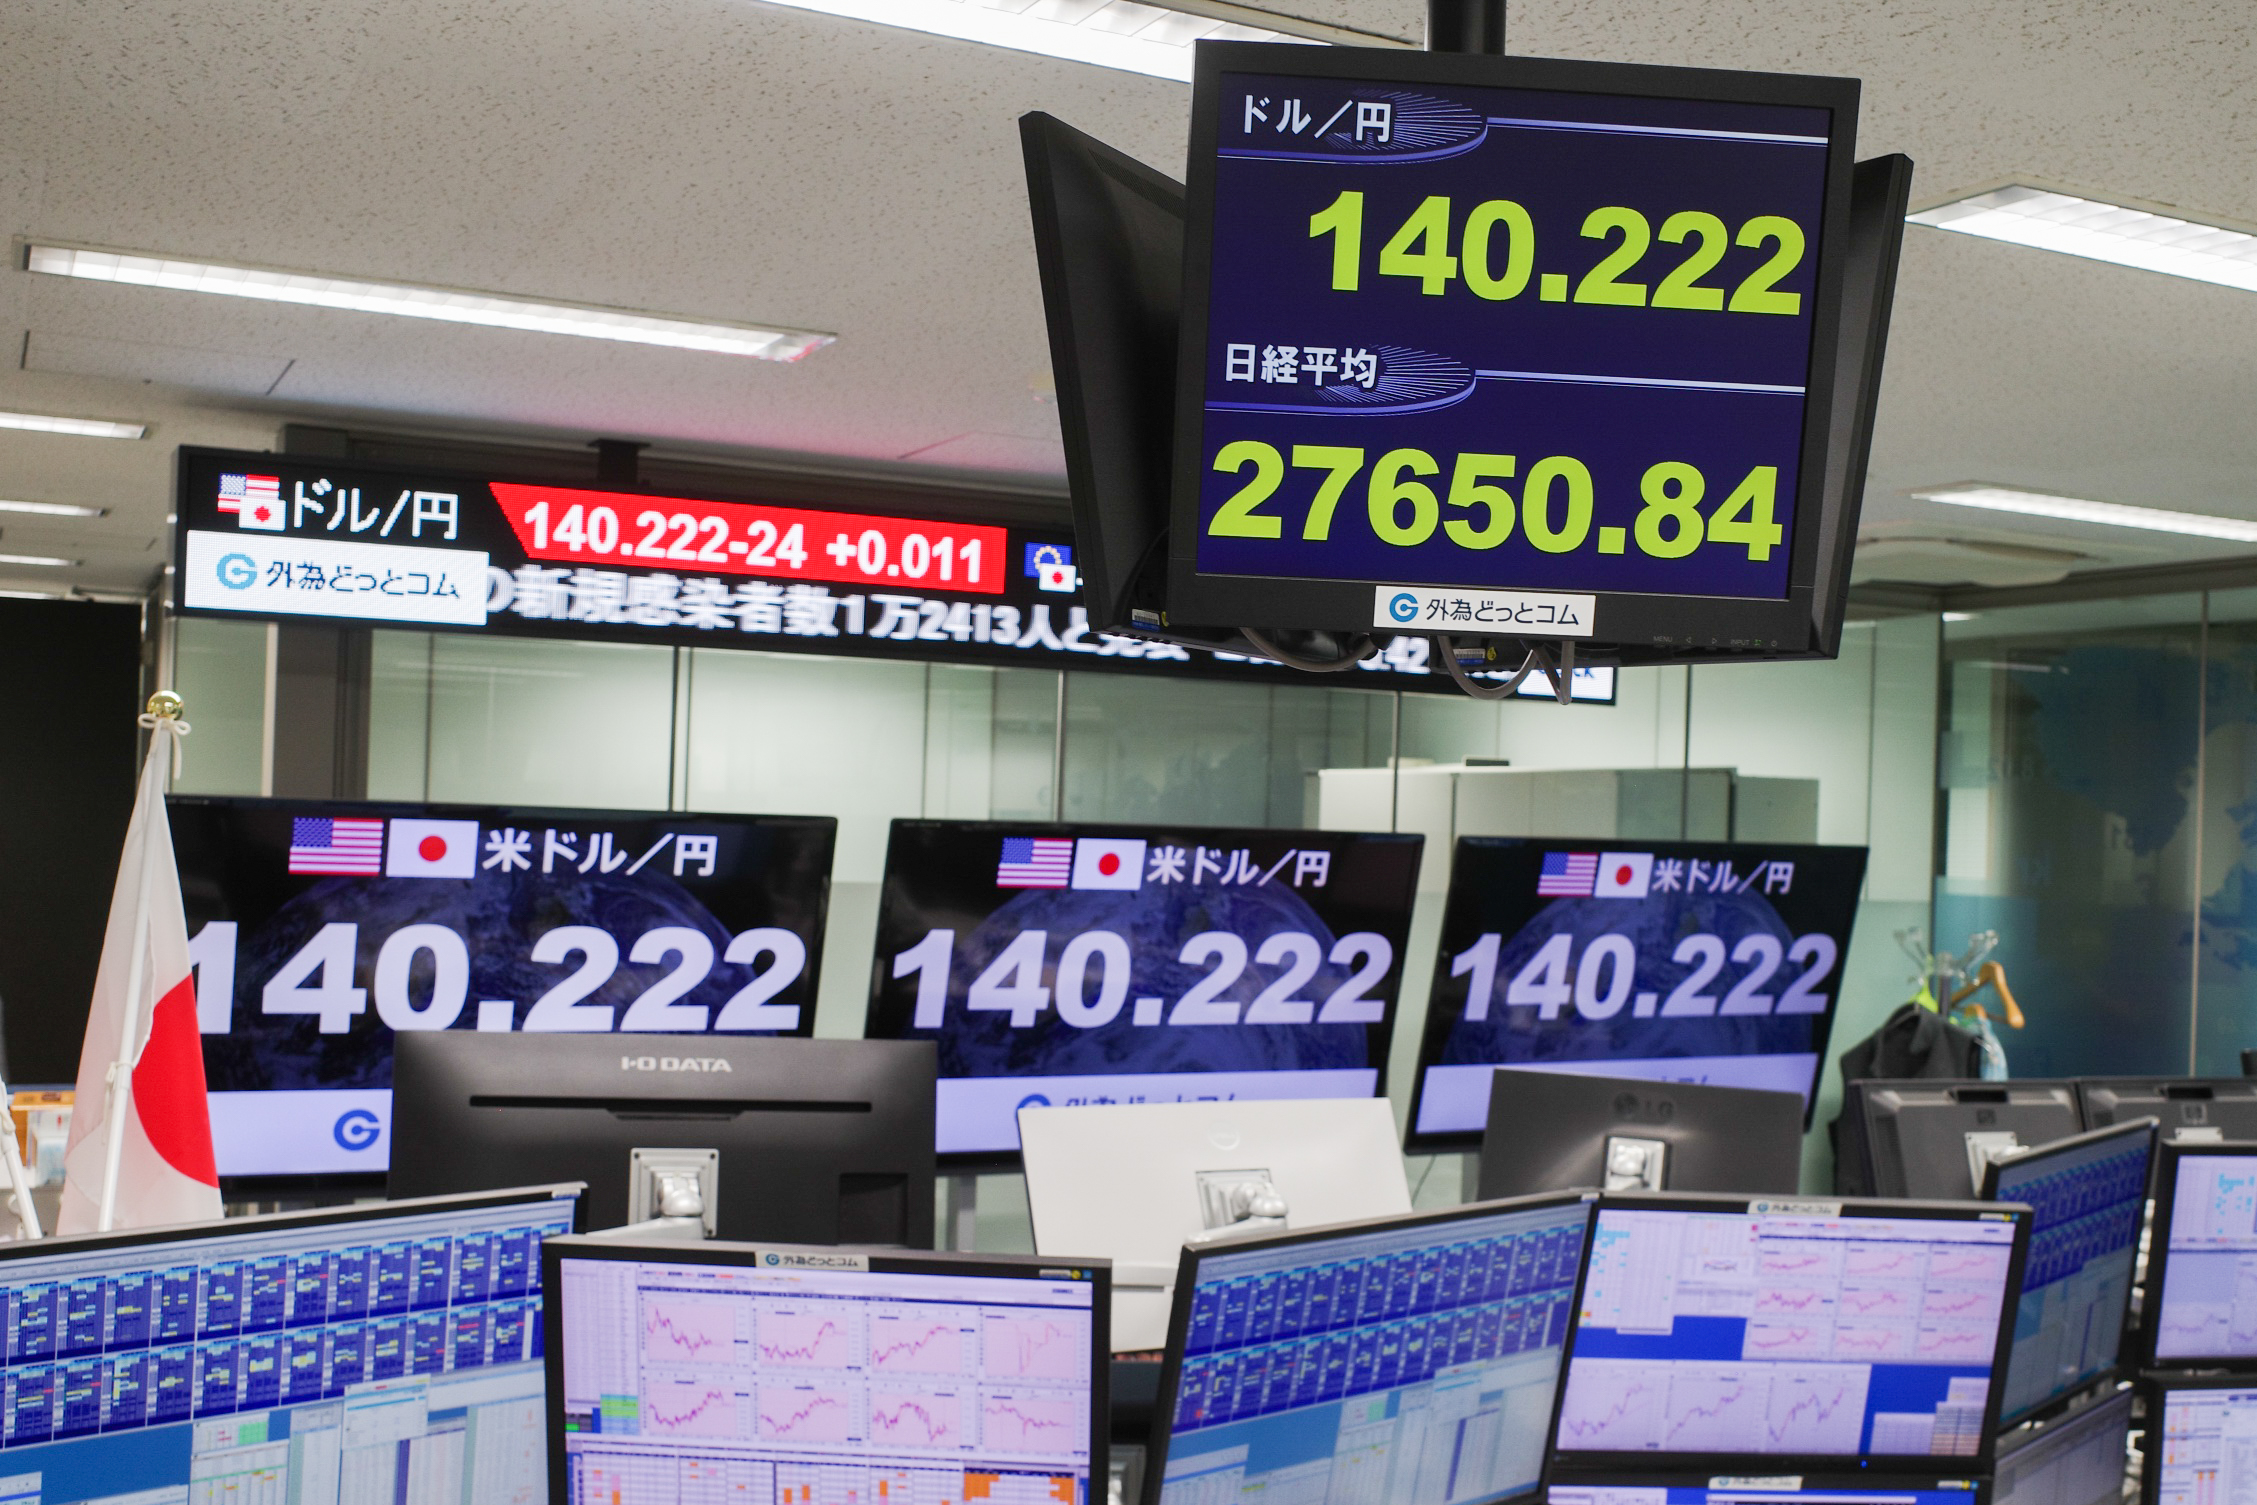 ญี่ปุ่นพร้อมแทรกแซง 'ค่าเงินเยน' อีกครั้ง ขณะเฝ้าระวังระดับสูง